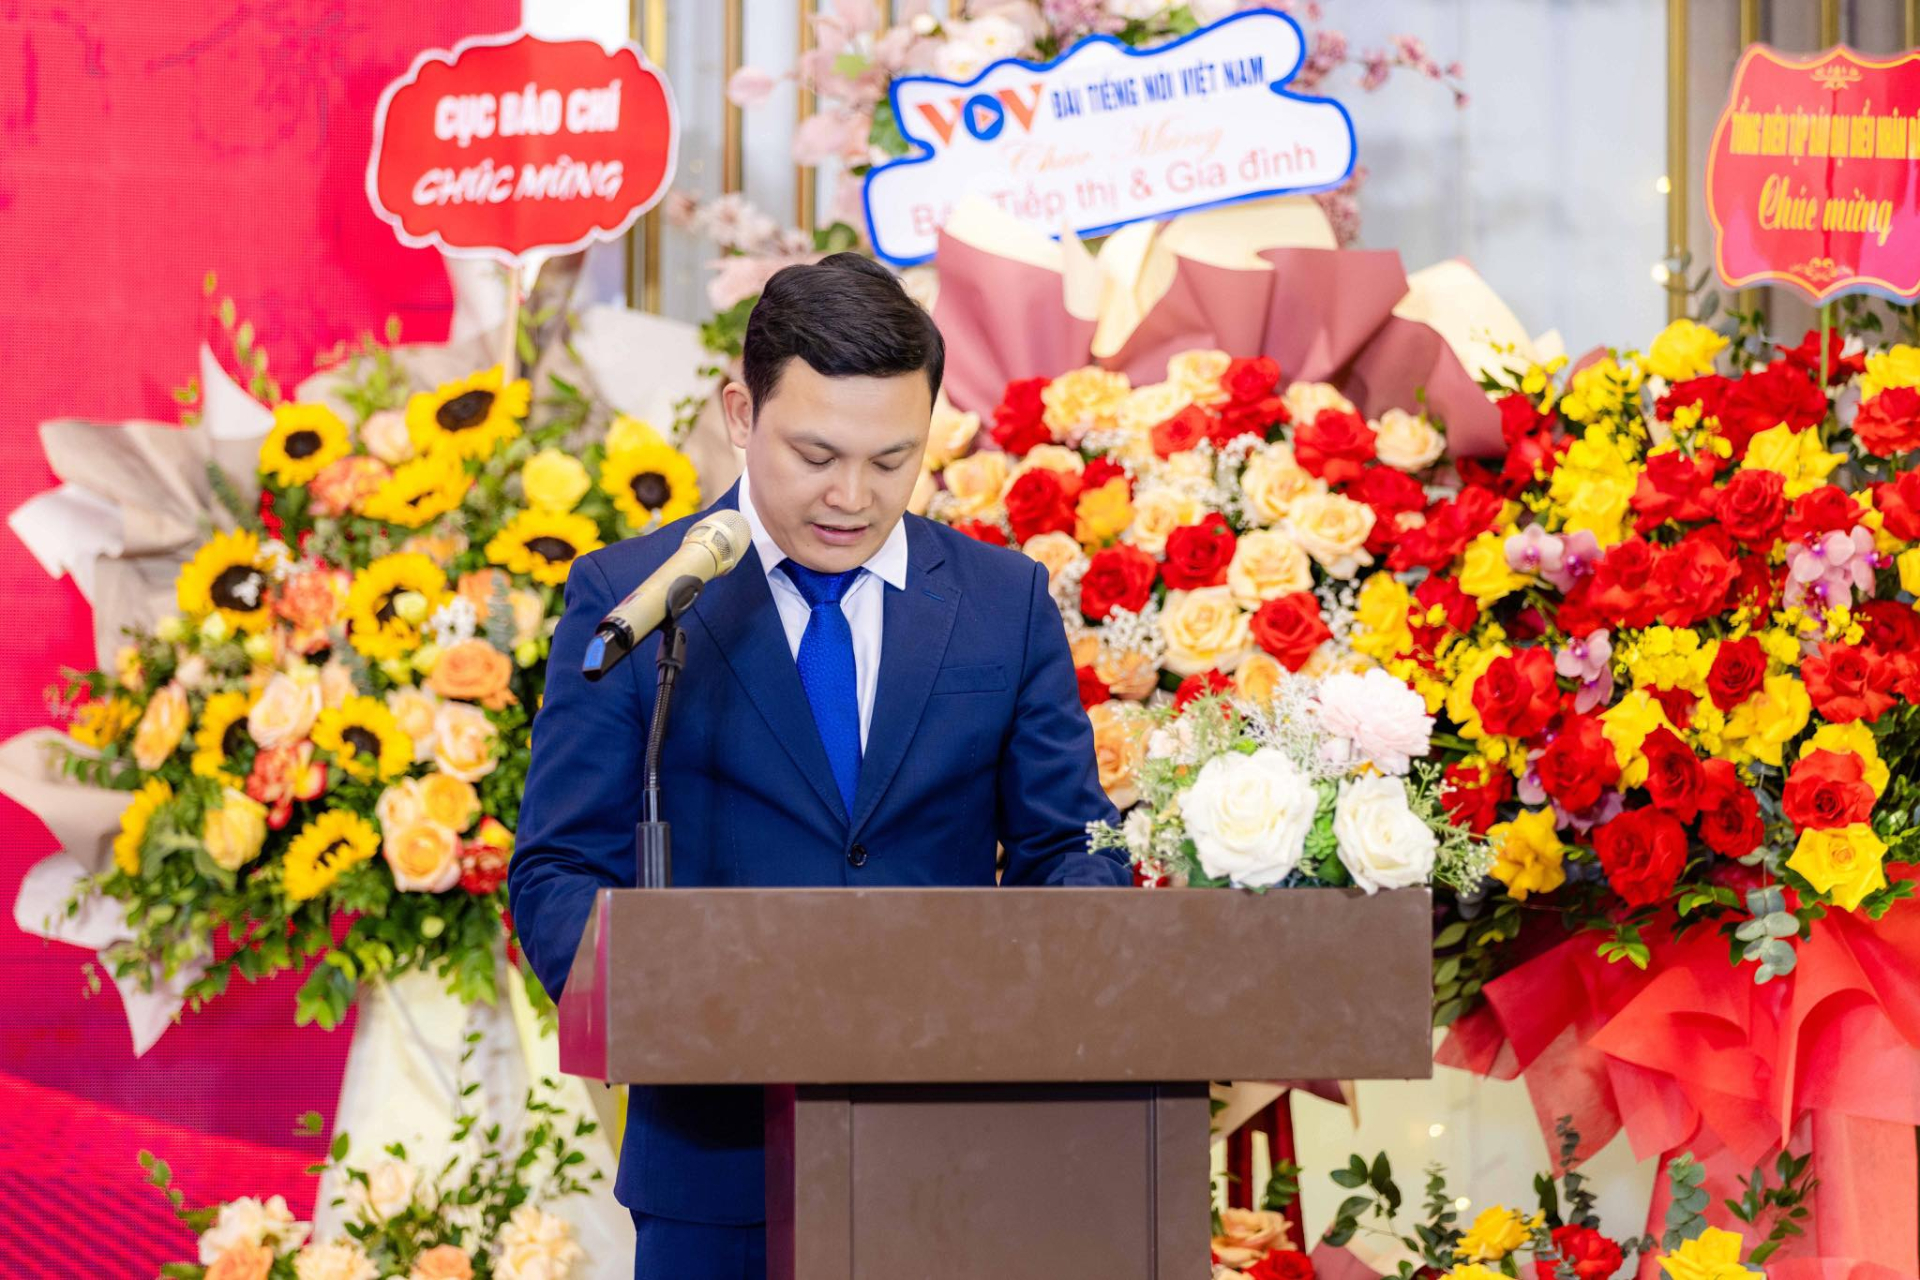 Nhà báo Hoàng Vững - Tổng Biên tập Tạp chí Tiếp thị & Gia đình phát biểu tại buổi lễ.